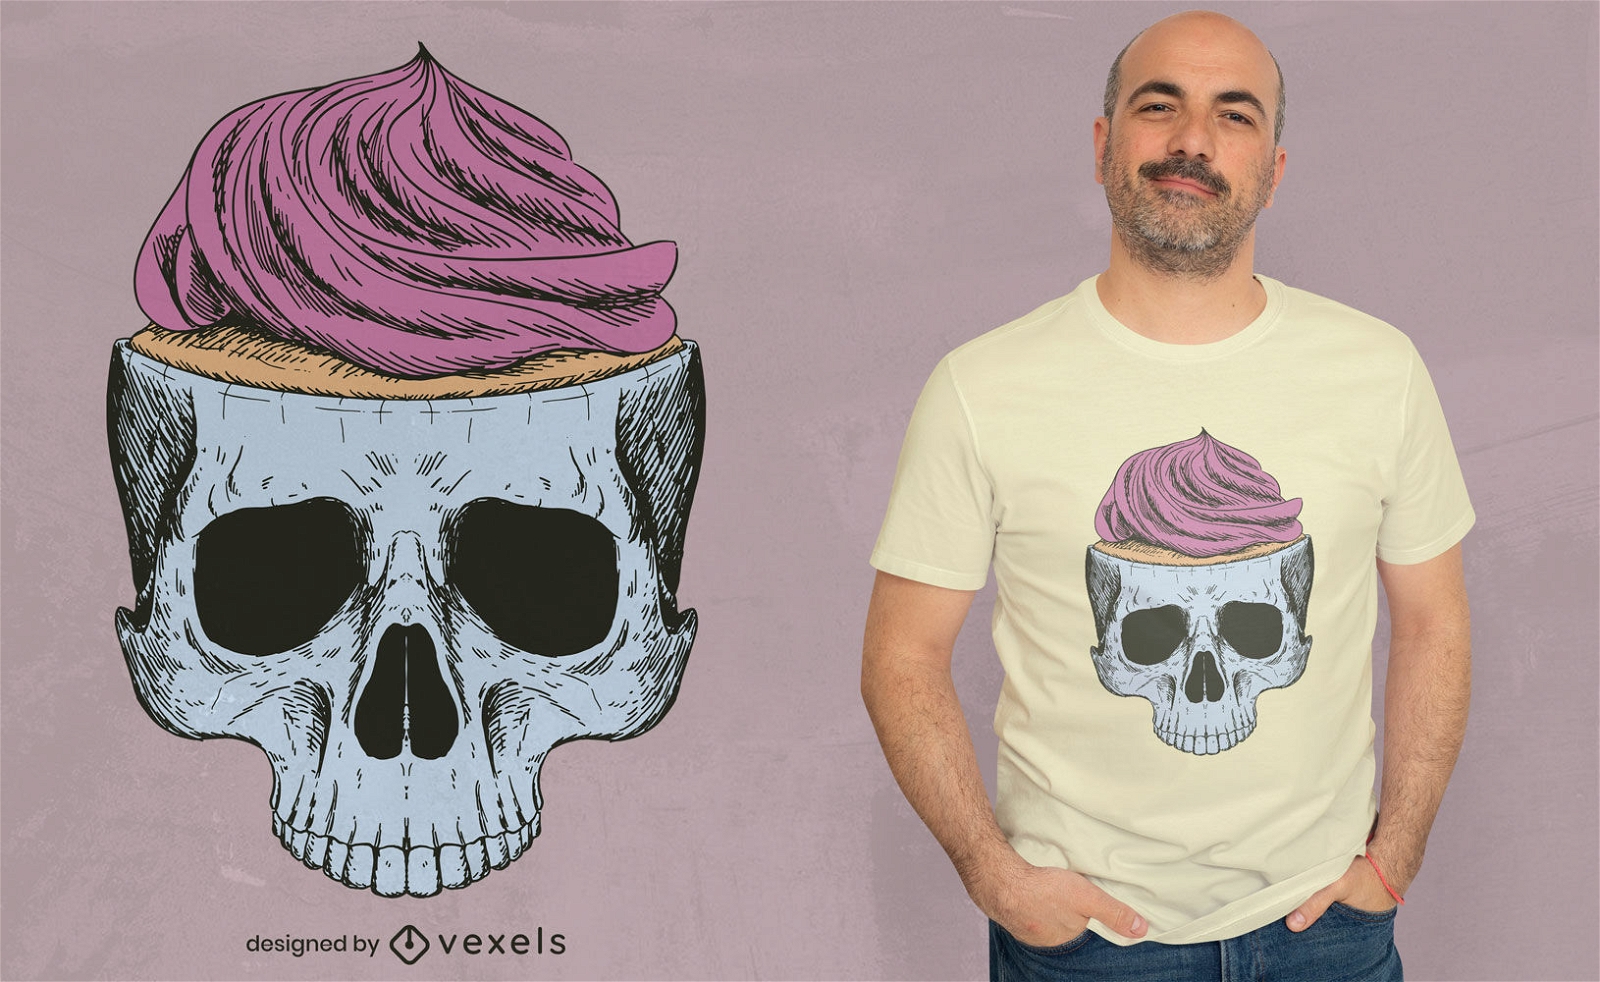 Cupcake-Schädel-T-Shirt-Design